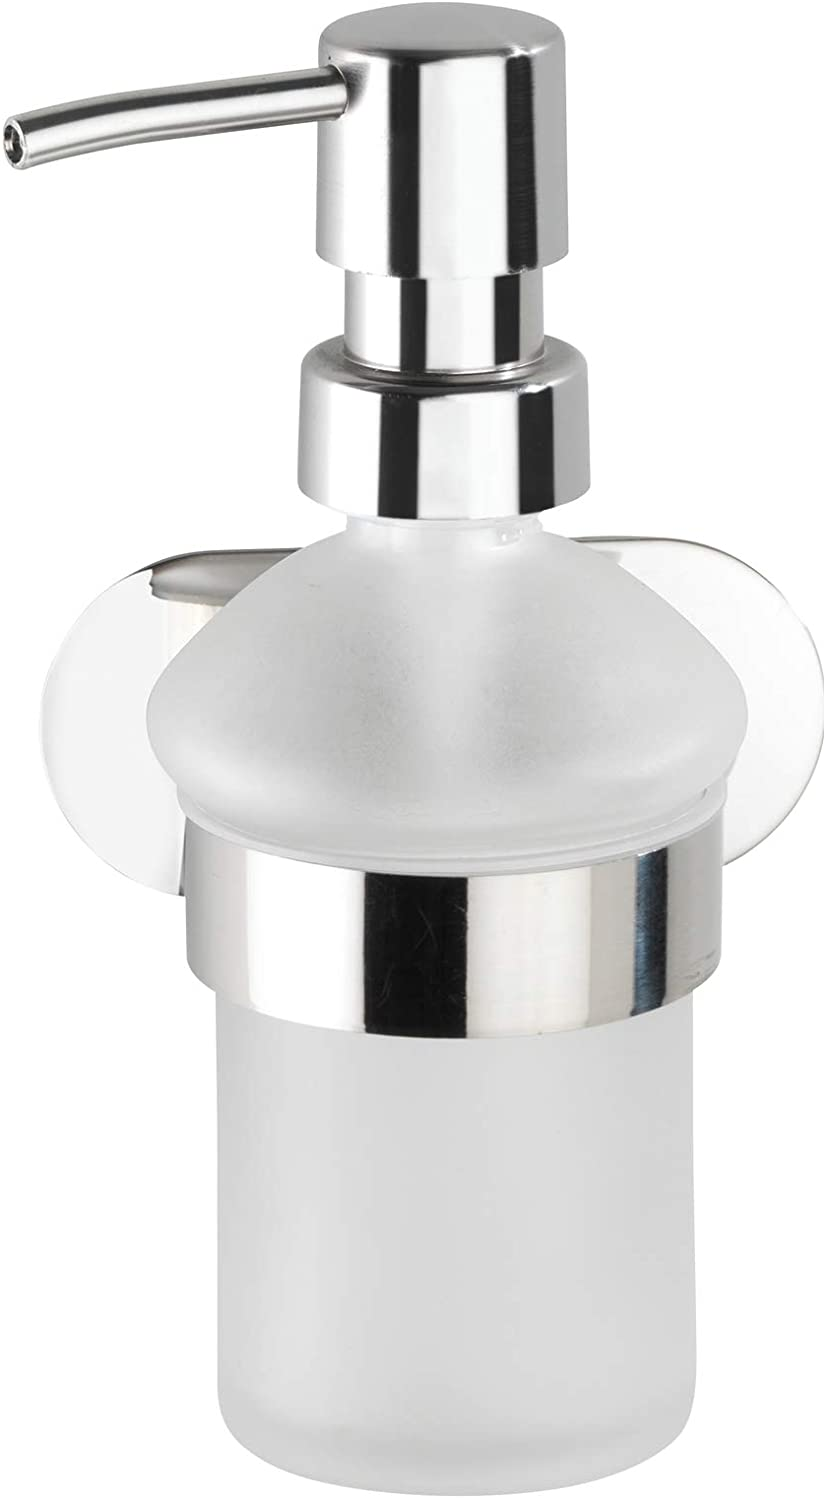 Turbo-Loc® Edelstahl Seifenspender Orea Shine - Flüssigseifen-Spender, Befestigen ohne bohren Fassungsvermögen: 0.2 l, Edelstahl rostfrei, 10 x 16.5 x 10.5 cm, Glänzend